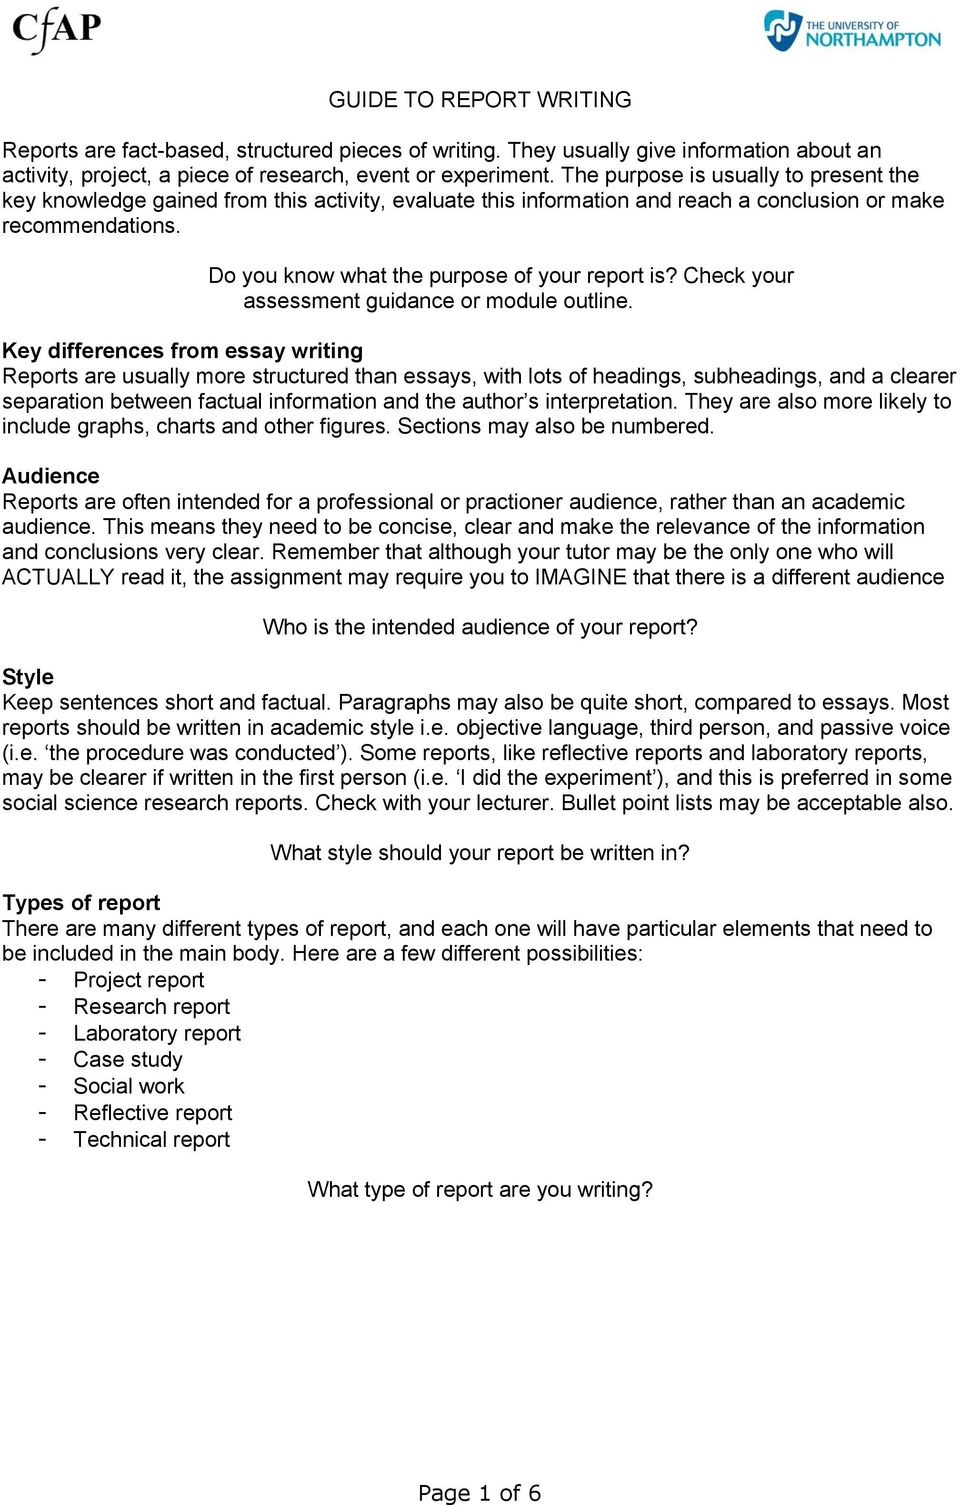 sample social work case study assessment